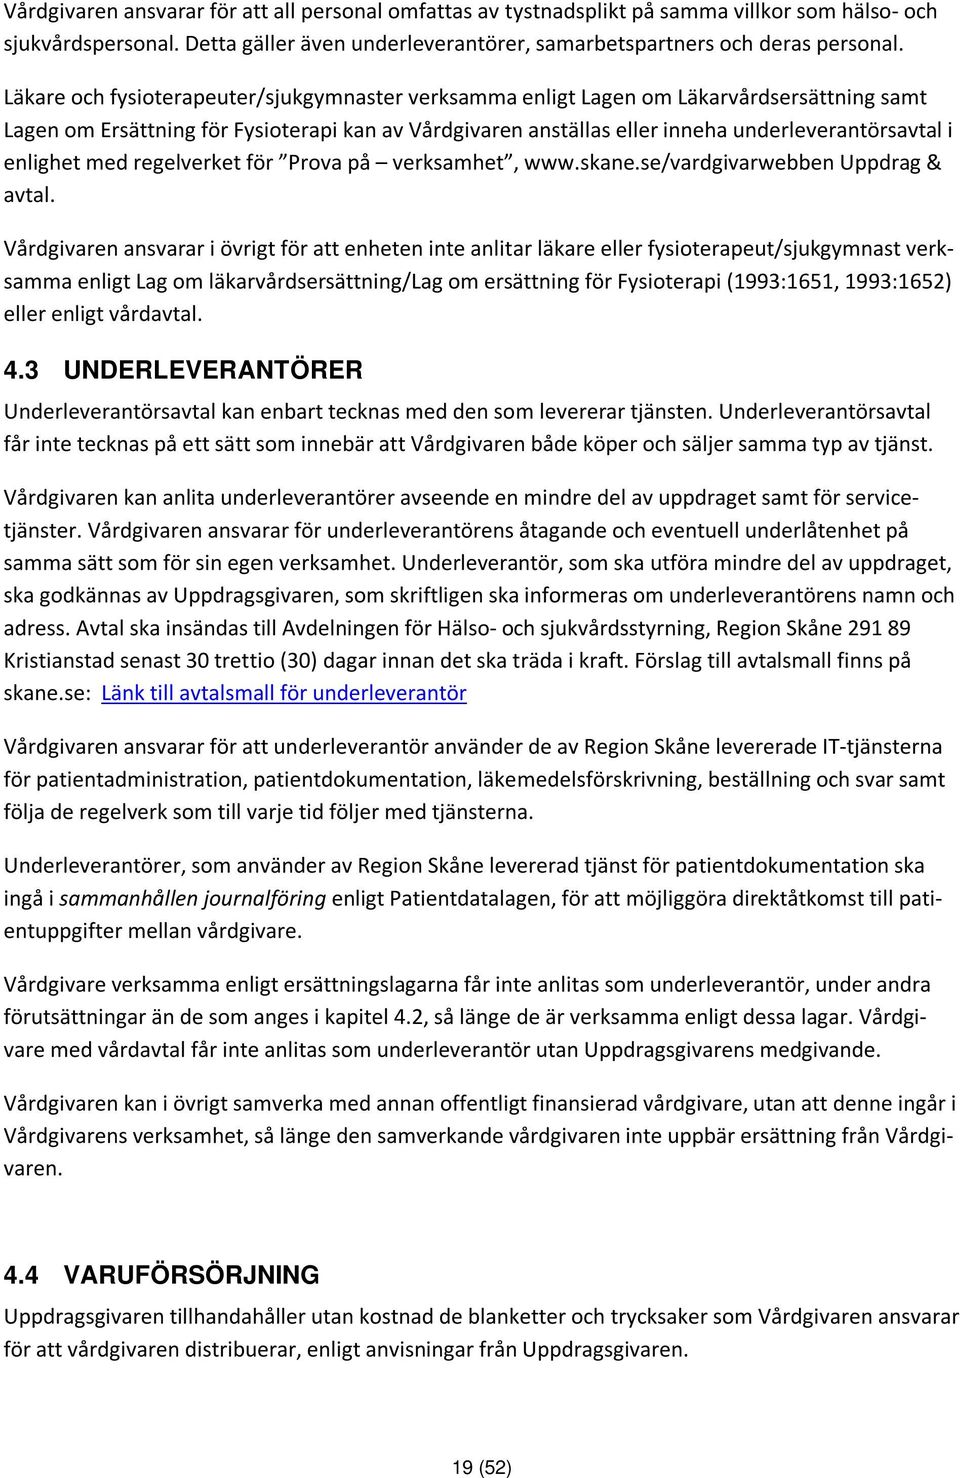 enlighet med regelverket för Prova på verksamhet, www.skane.se/vardgivarwebben Uppdrag & avtal.